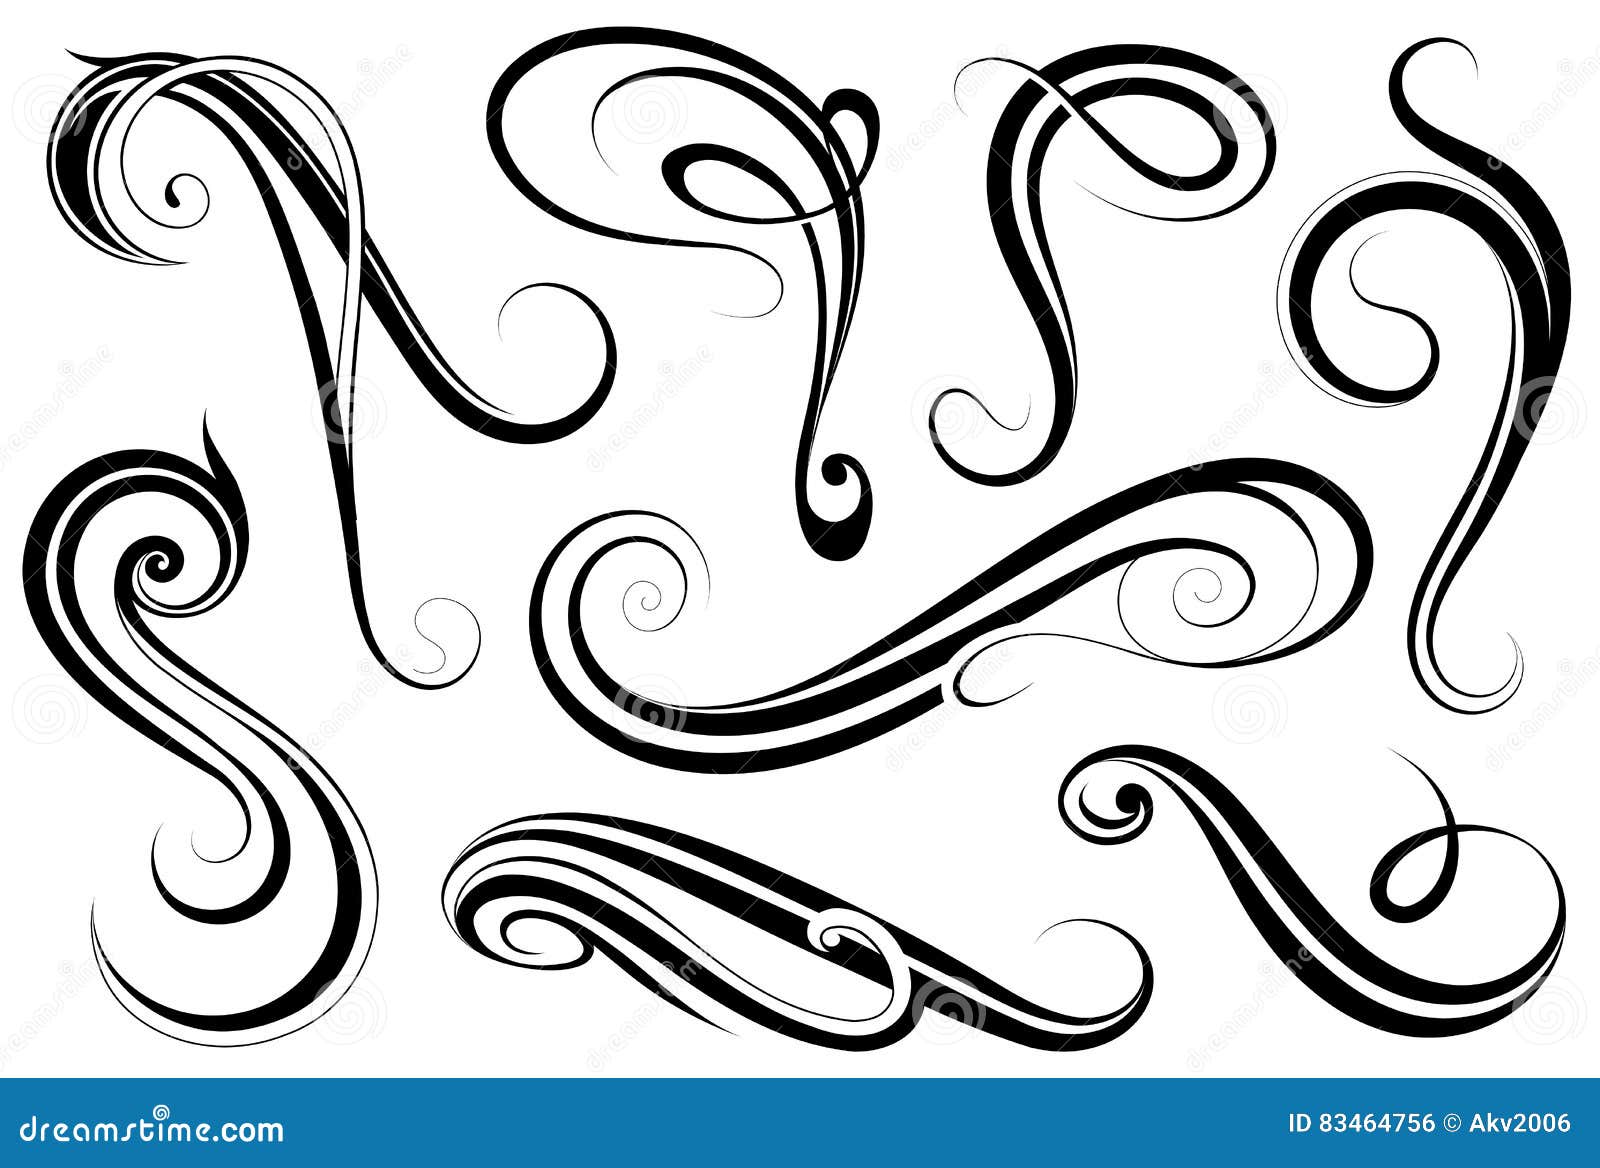 calligraphic swirls set